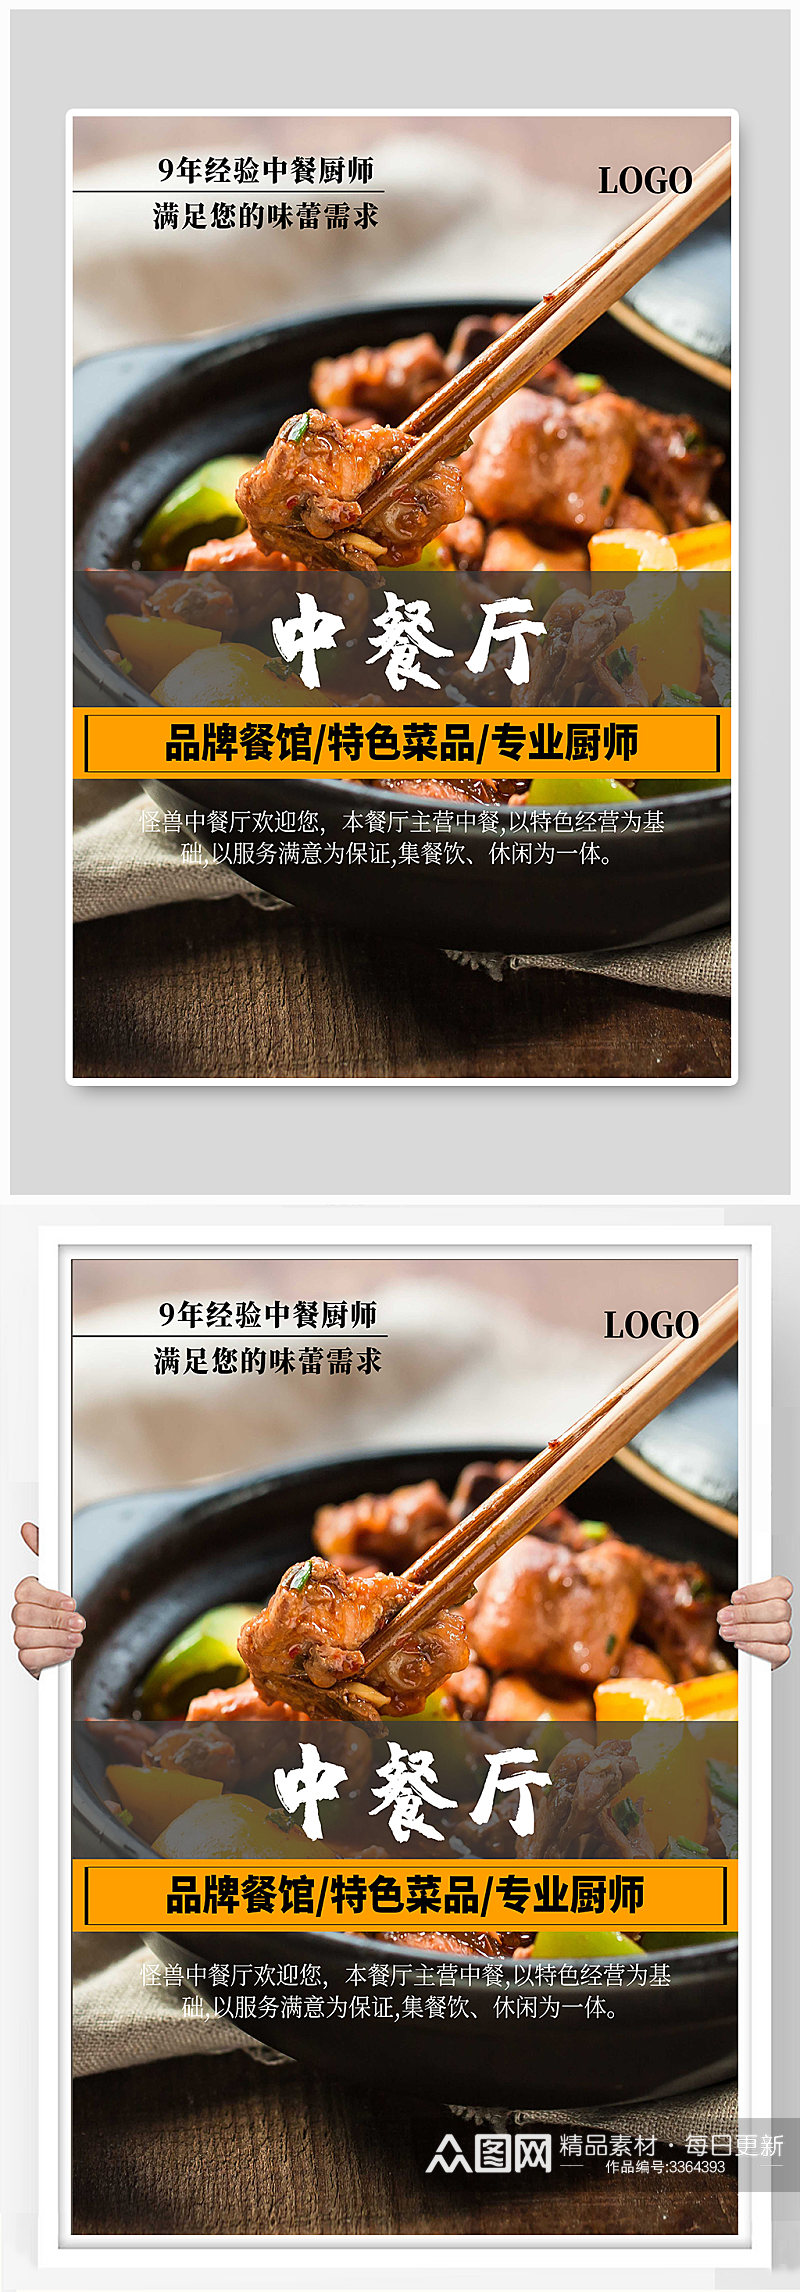 中餐厅宣传海报设计素材